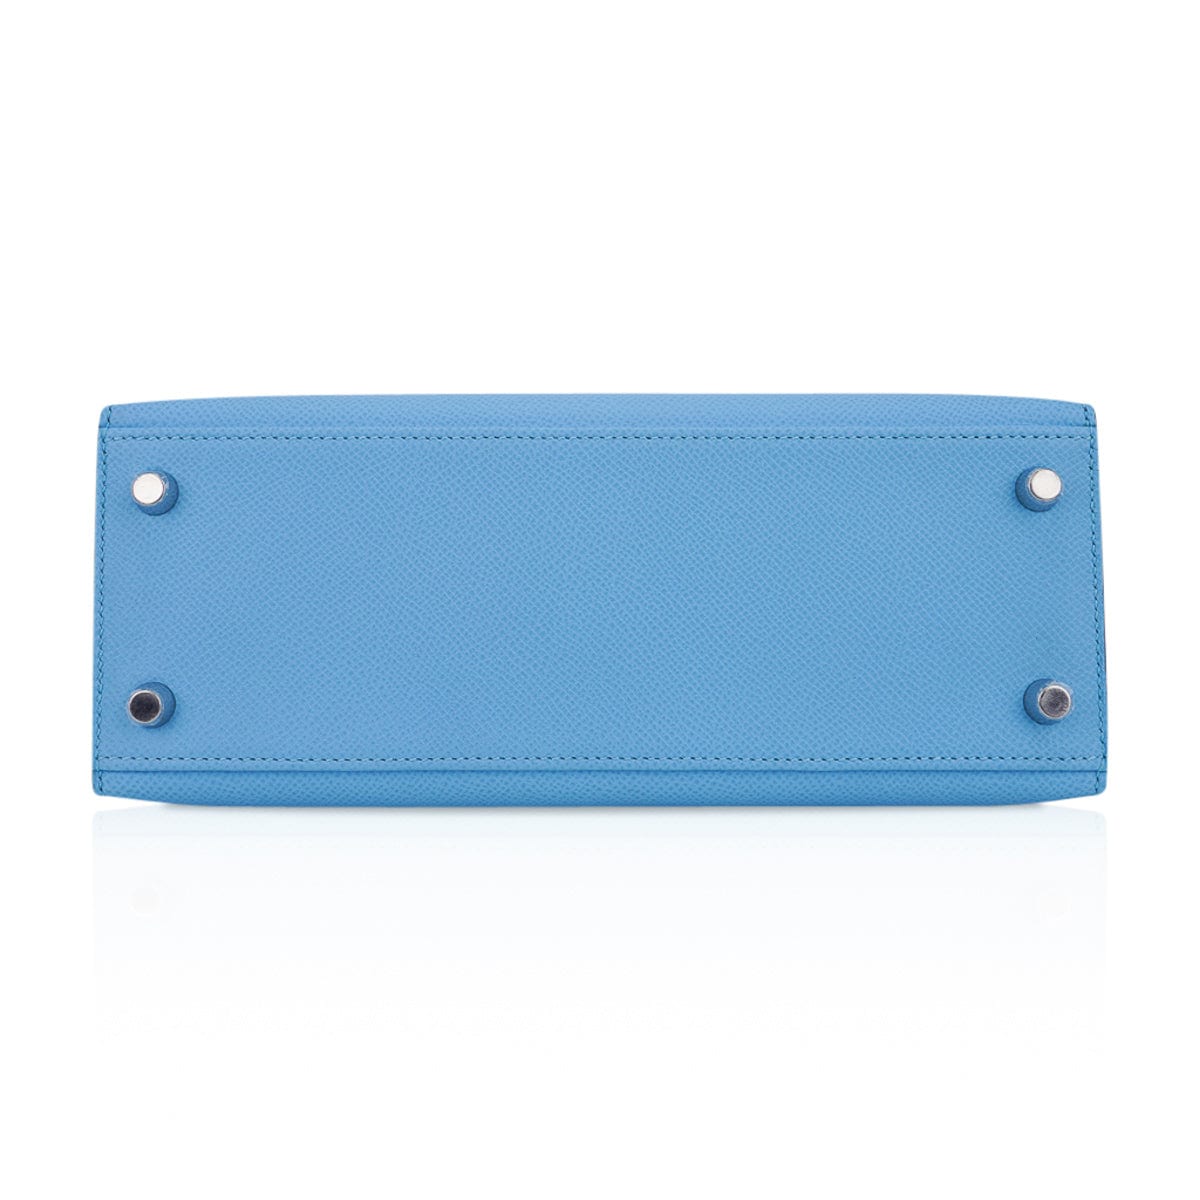 Hermes Kelly Mini Pochette Bag Epsom Leather Palladium Hardware In Sky Blue